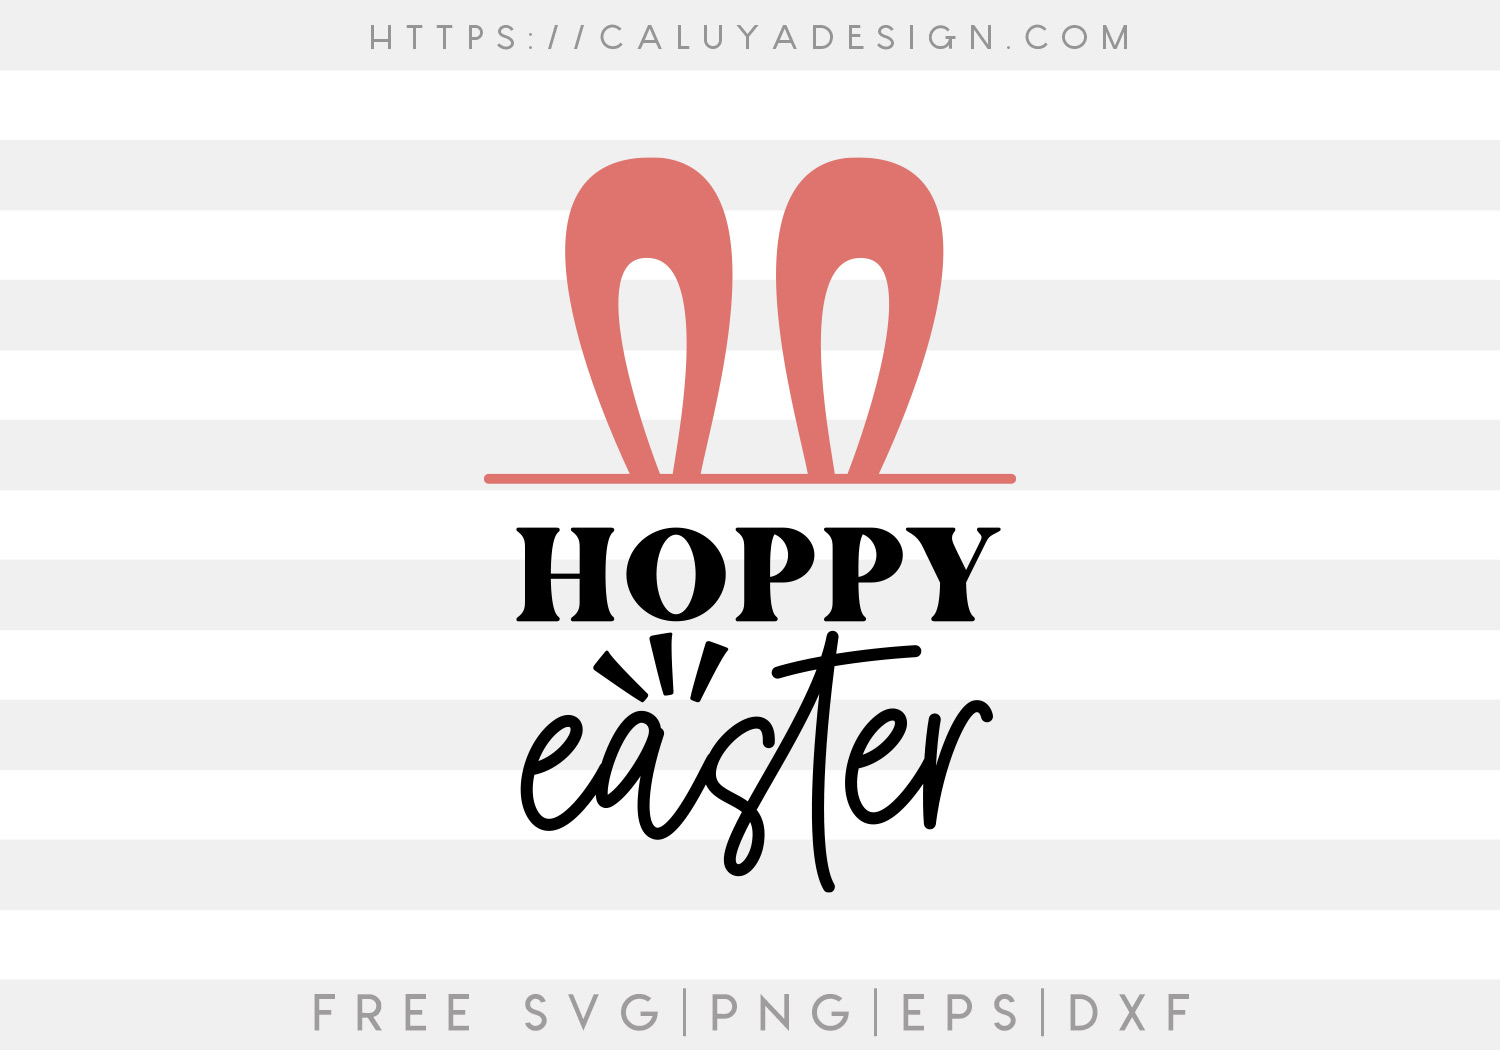 Download Free Hoppy Easter Svg Caluya Design